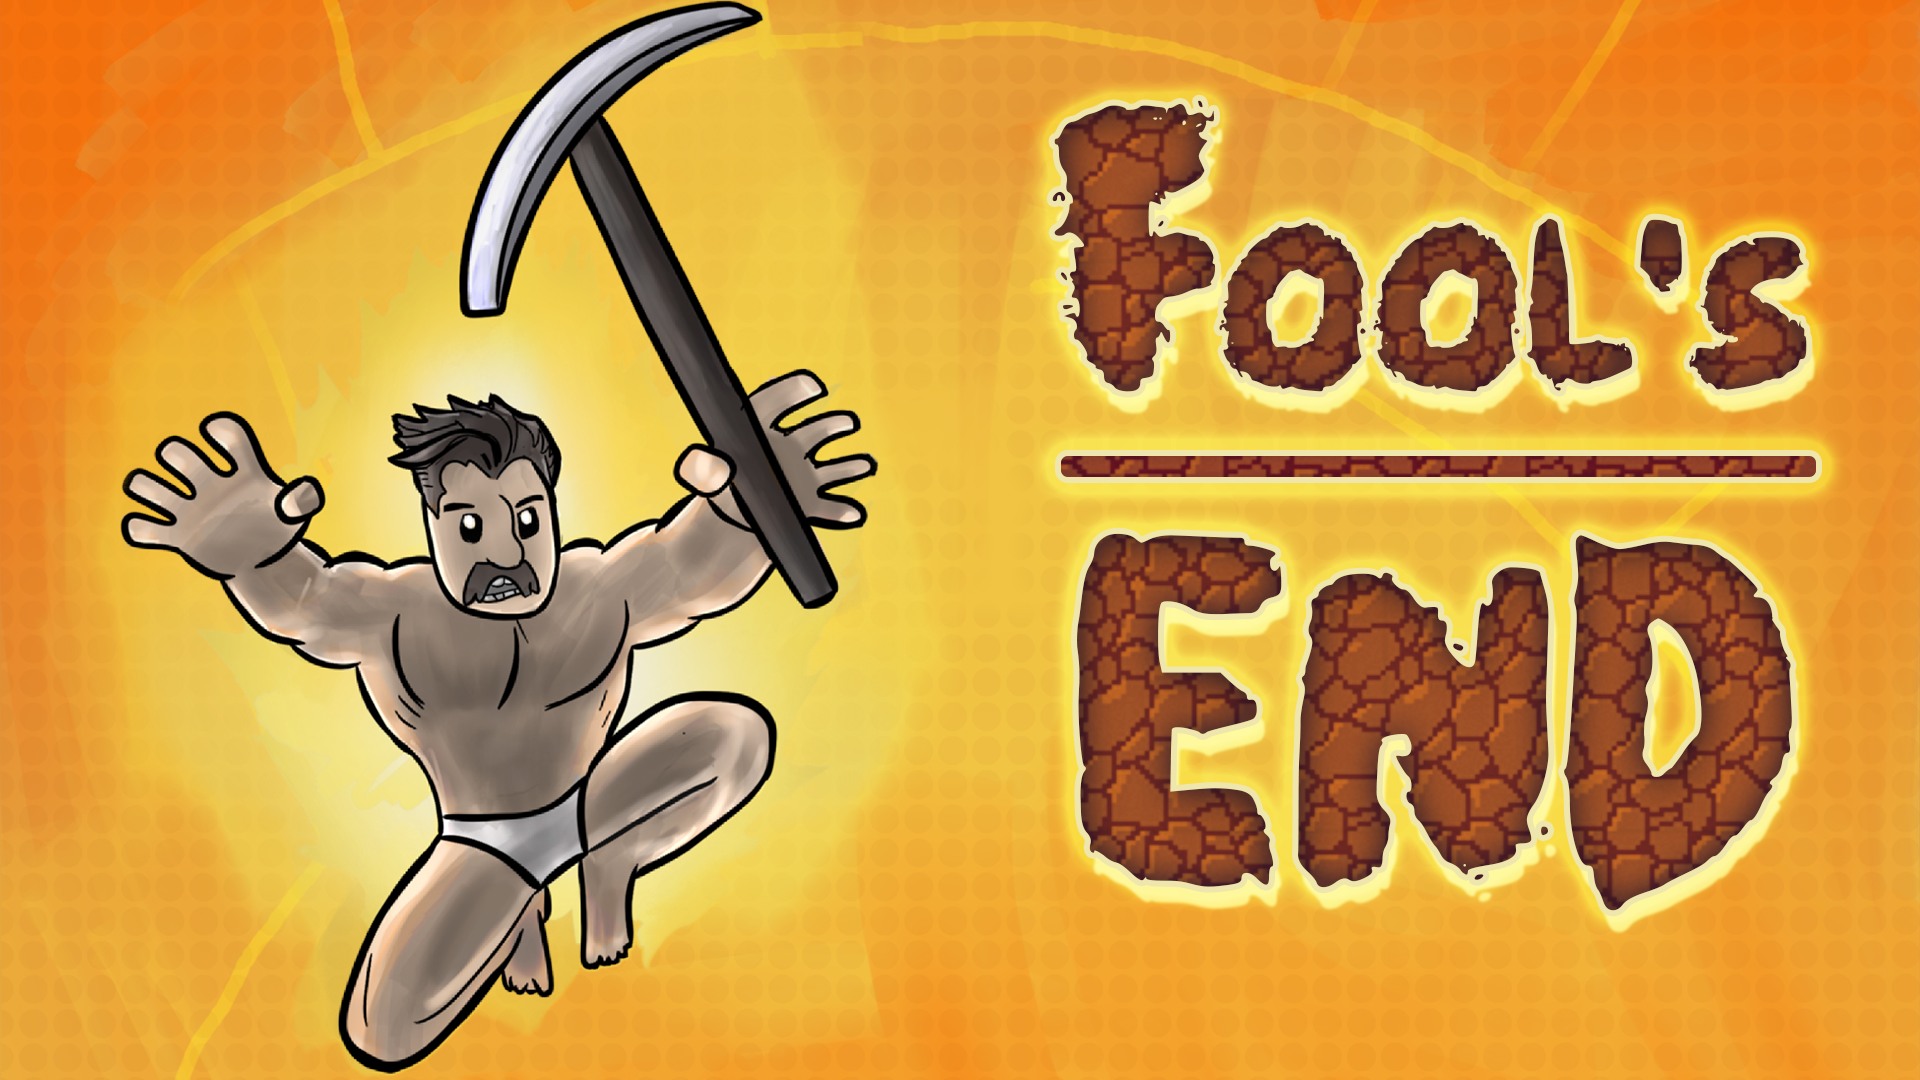 Fool's End - Playable Demo